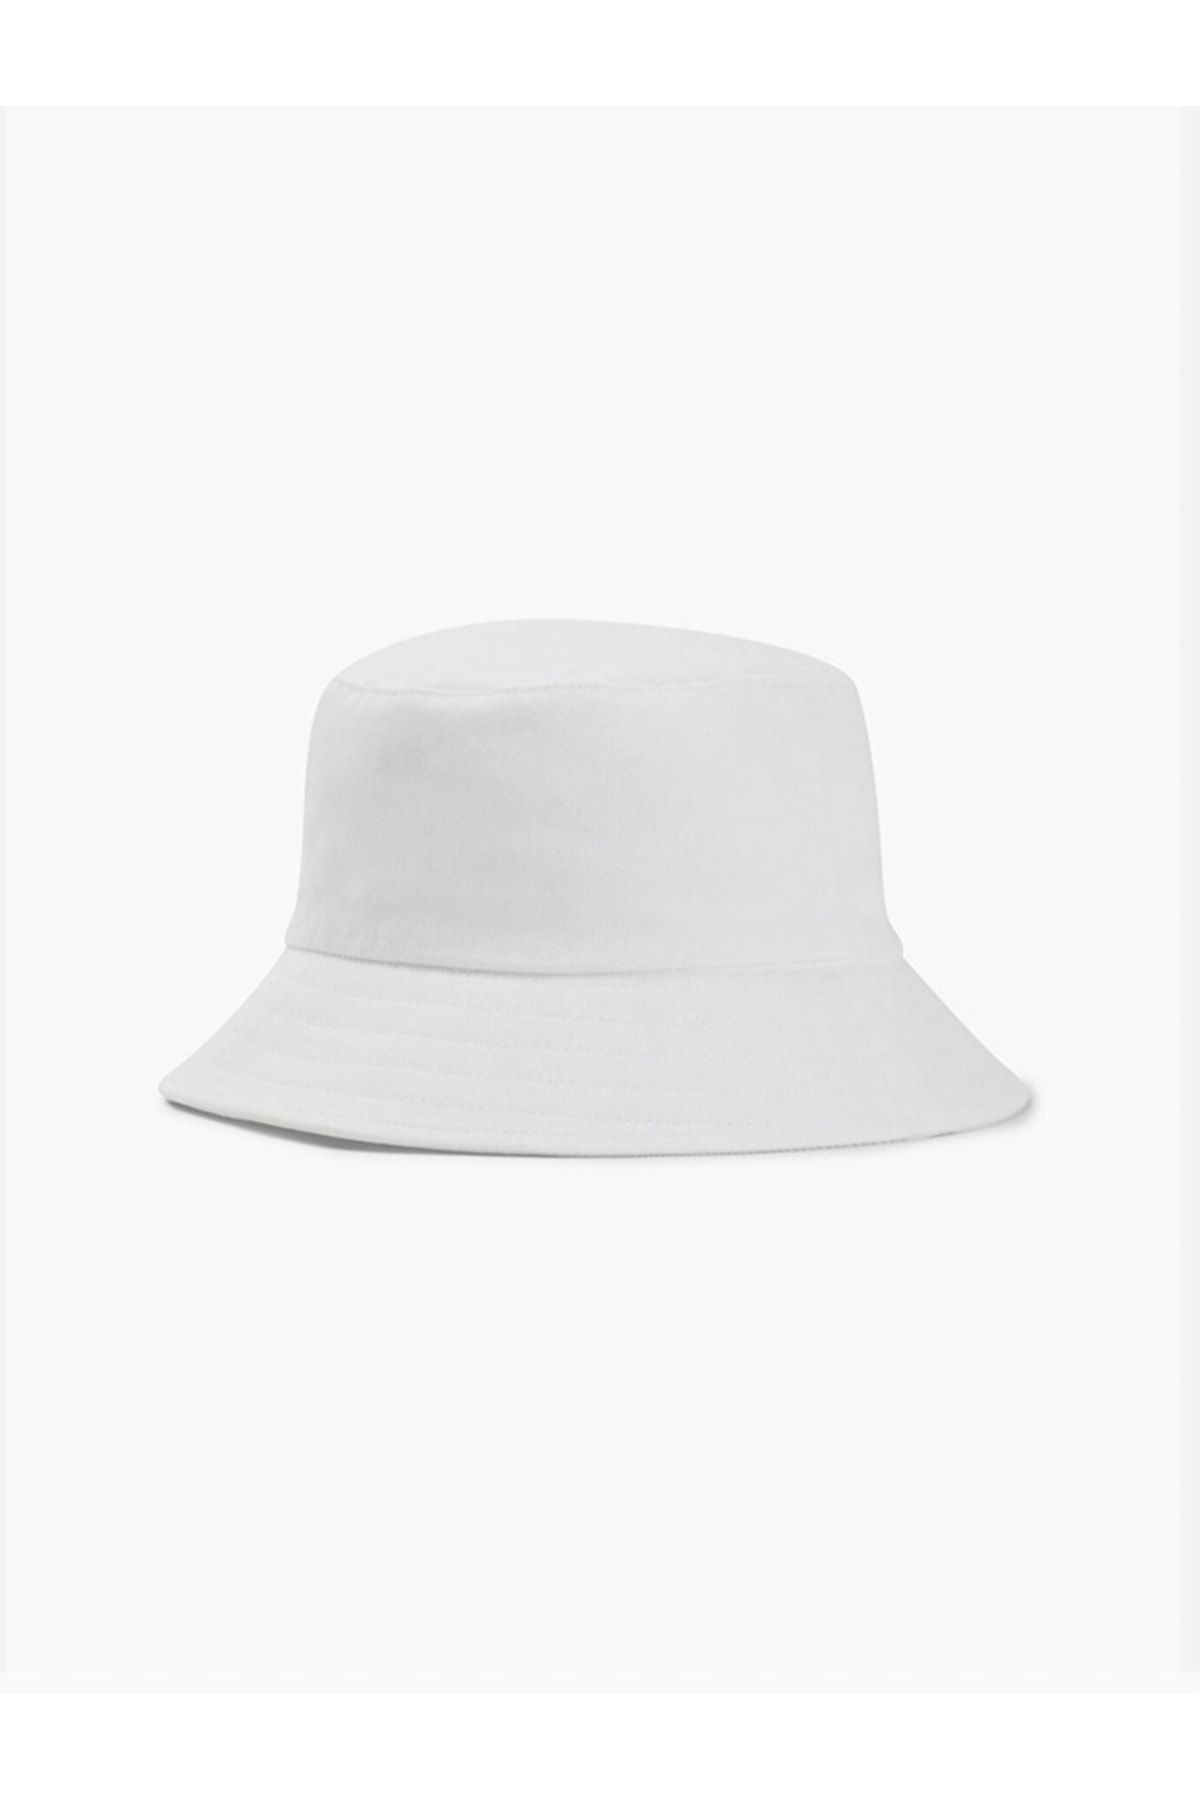 Zilola Butik Düz Beyaz Kova Şapka Balıkçı Şapka Bucket Şapka